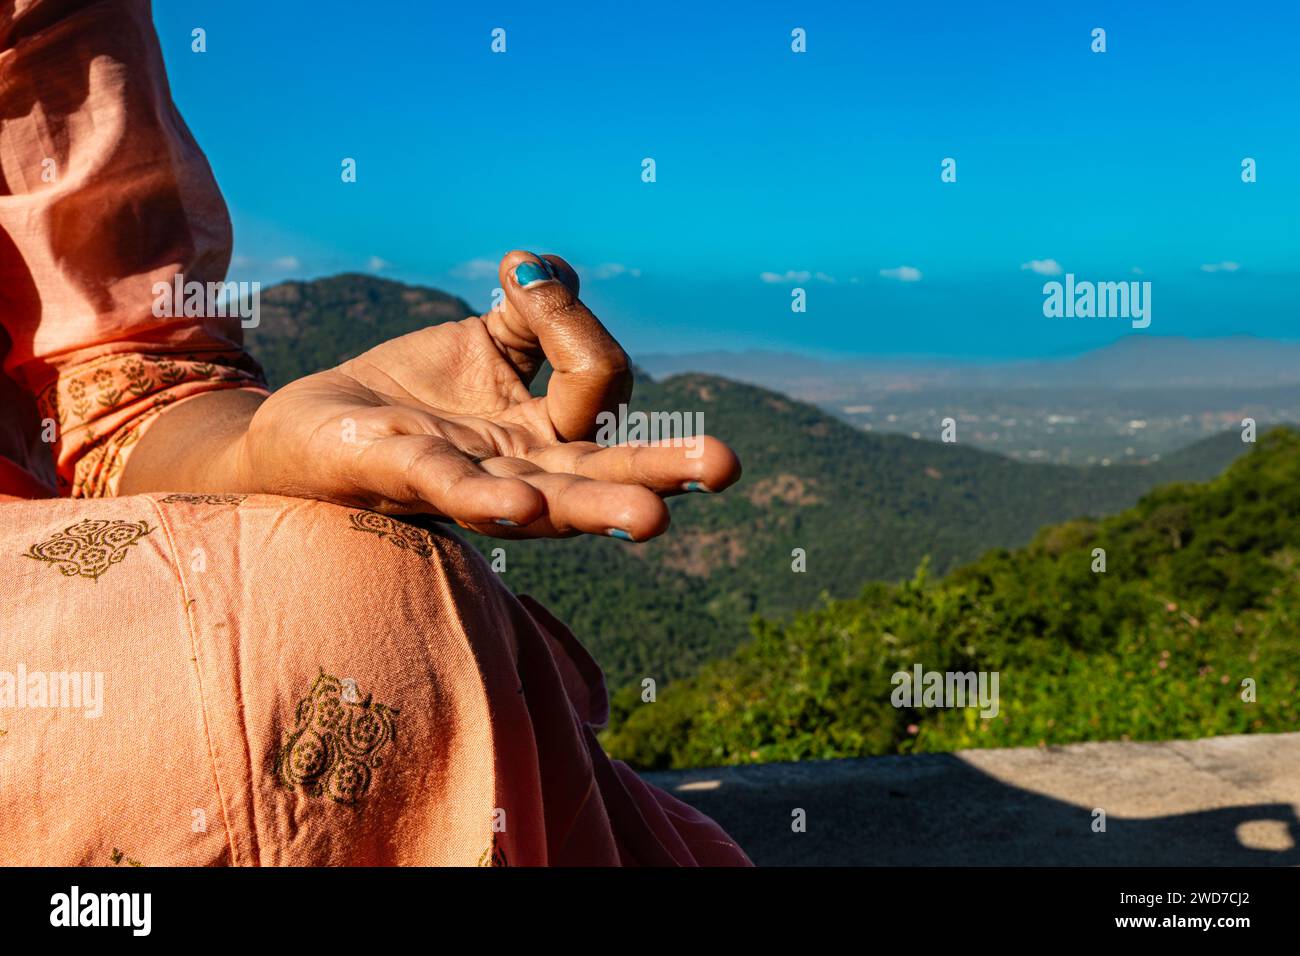 Une femme indienne, vêtue d'une tenue traditionnelle, trouve du réconfort dans la méditation au sommet d'un sommet majestueux. Ses mains, gracieusement positionnées dans un mudra Banque D'Images